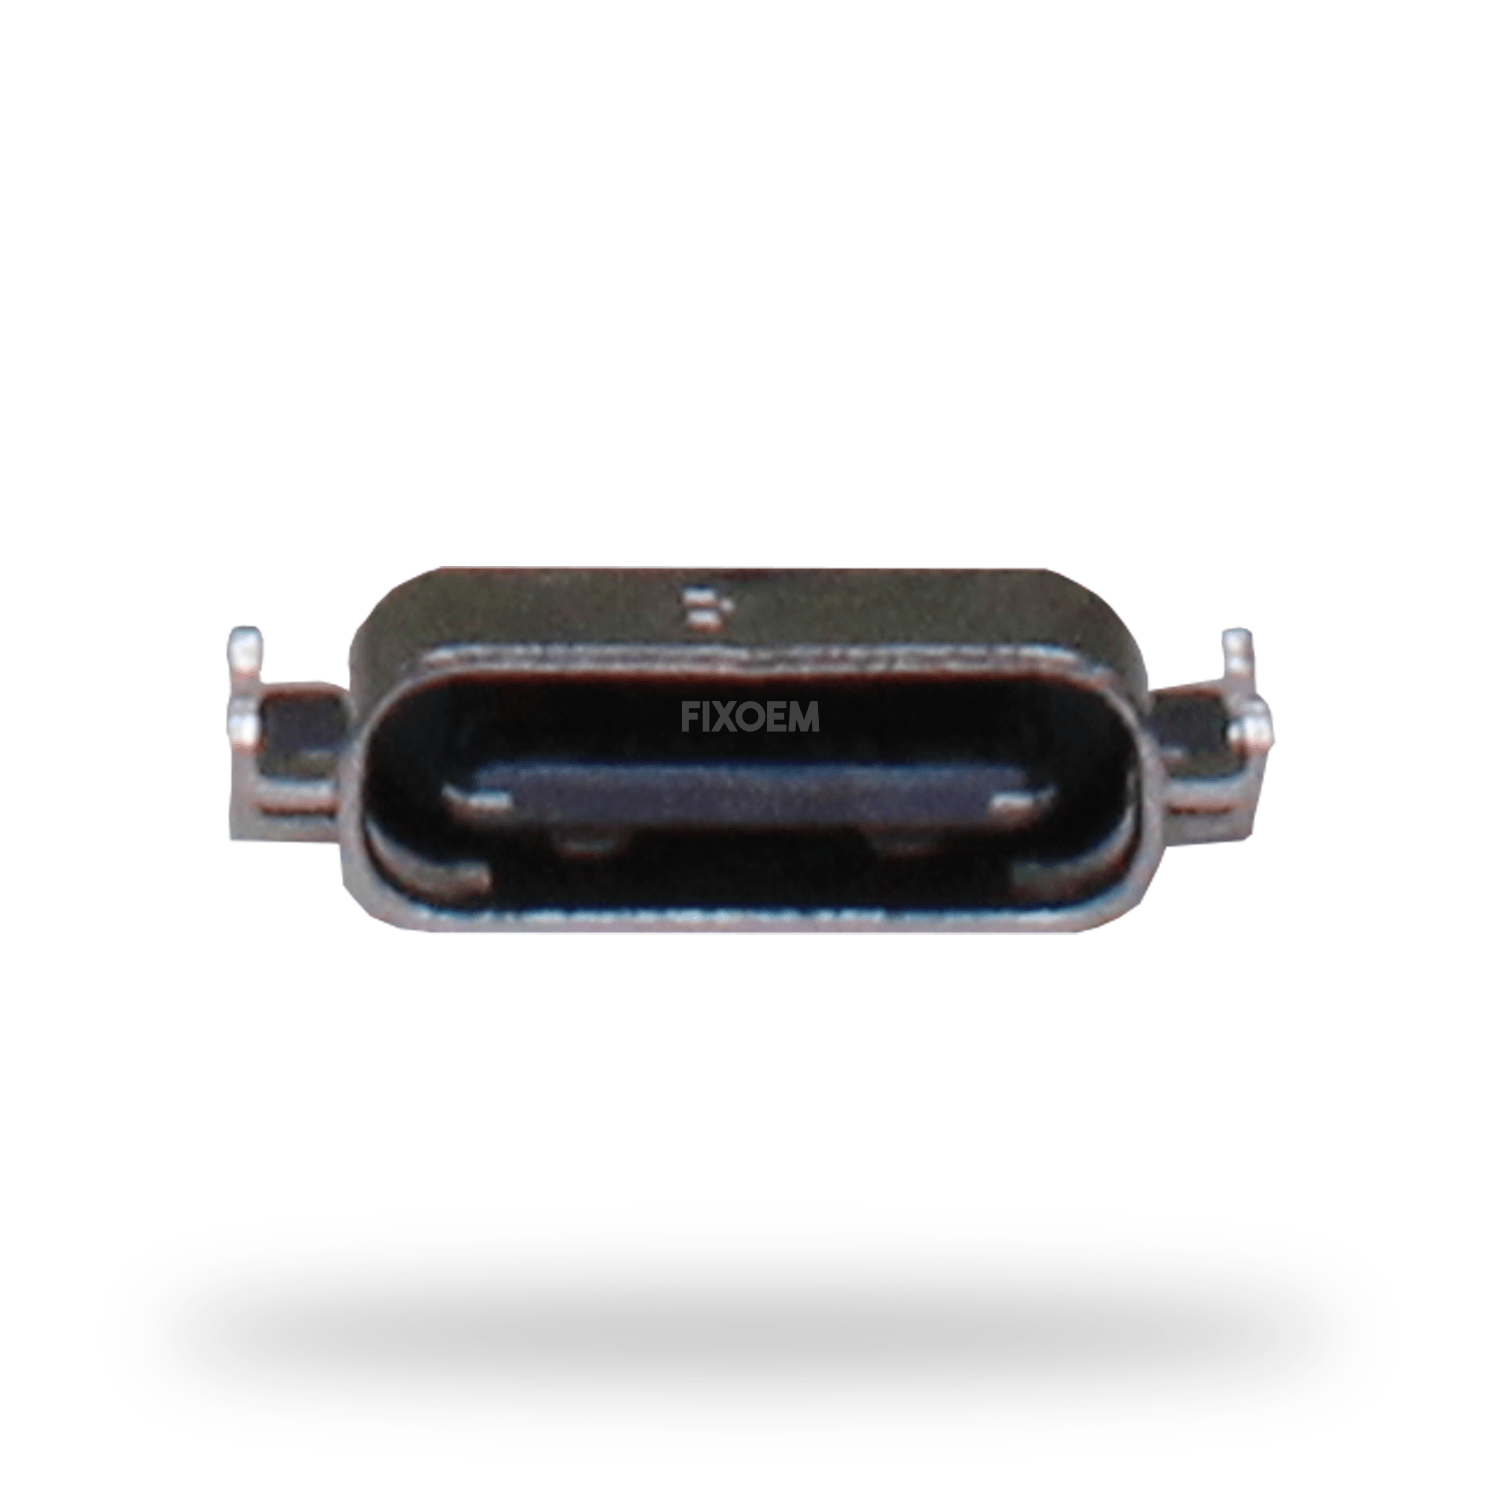 Pin Carga Moto Z Play 5Pz Xt1635 a solo $ 40.00 Refaccion y puestos celulares, refurbish y microelectronica.- FixOEM